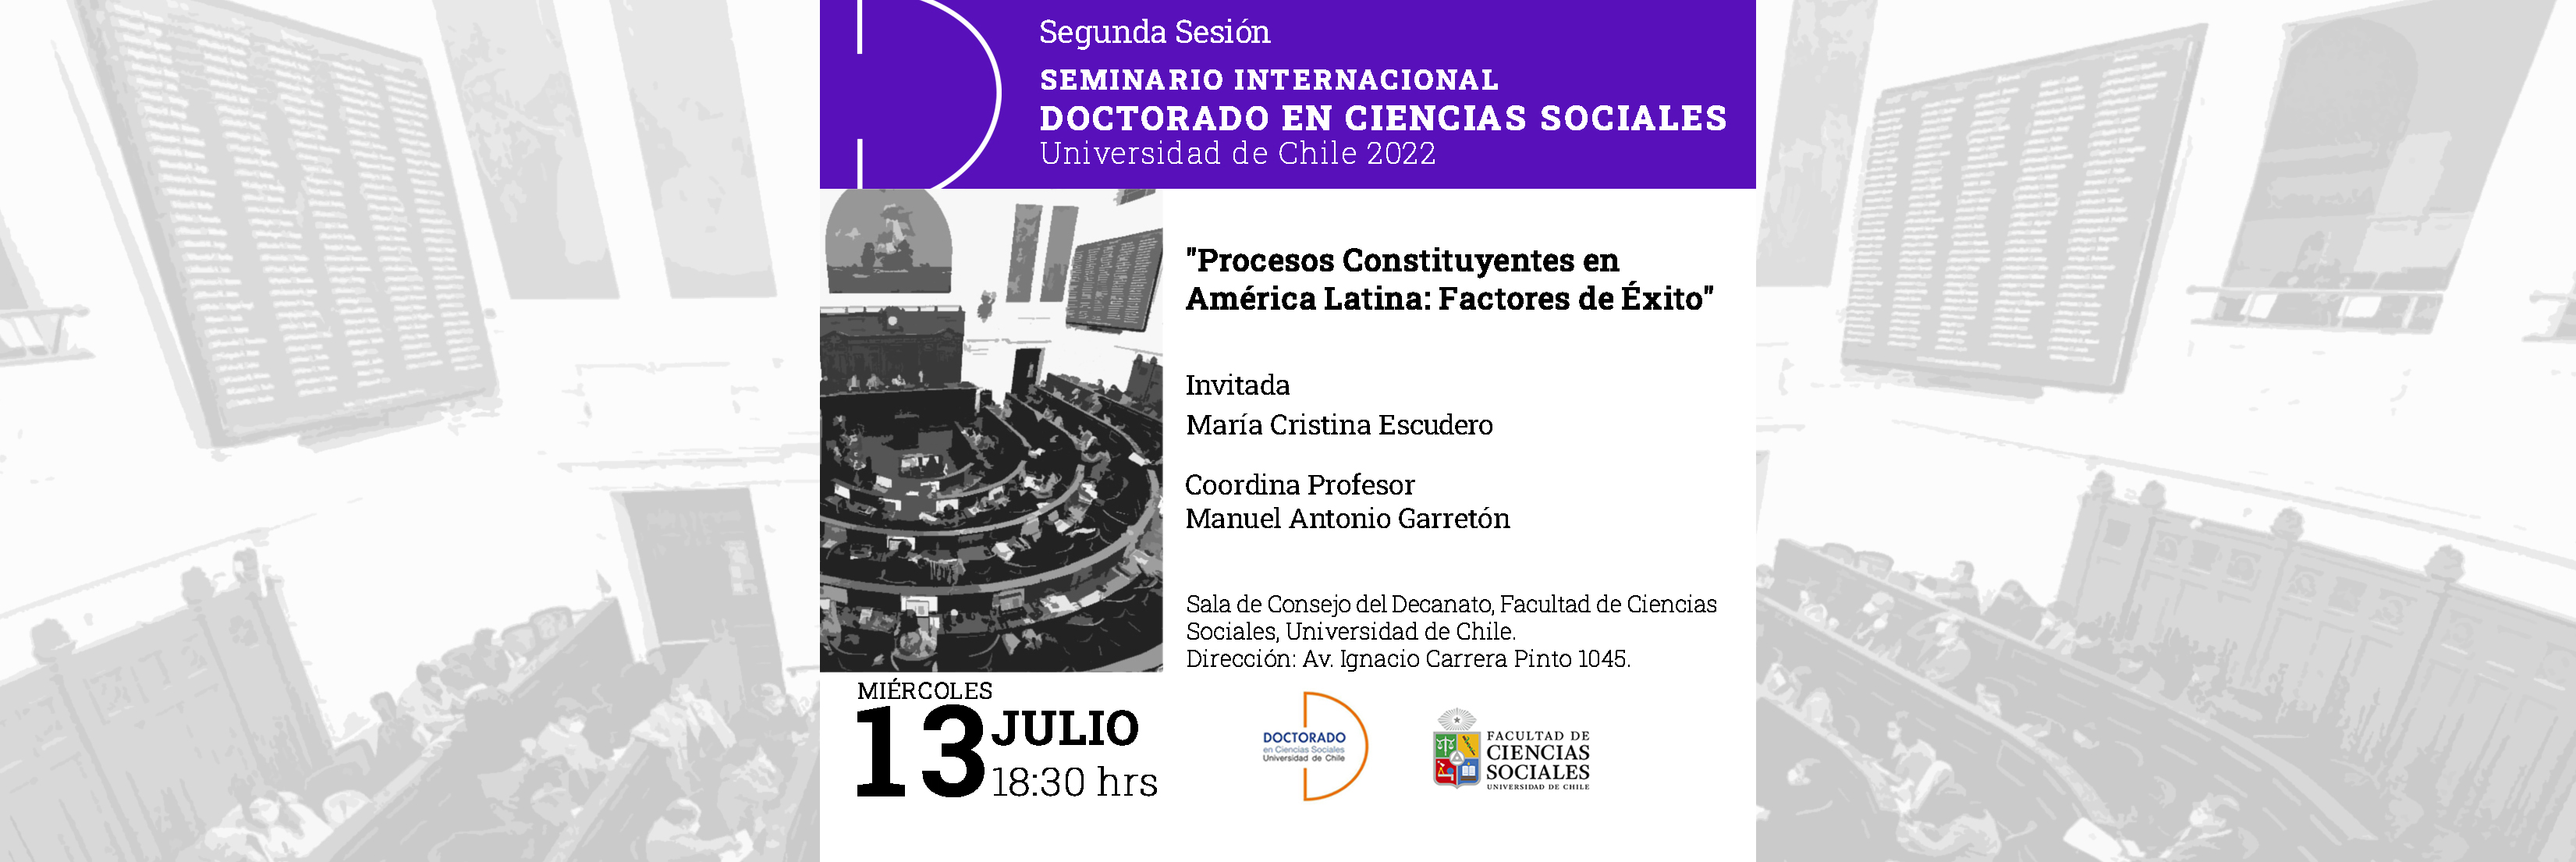 Segunda sesión del seminario Internacional del Doctorado en Ciencias Sociales 2022